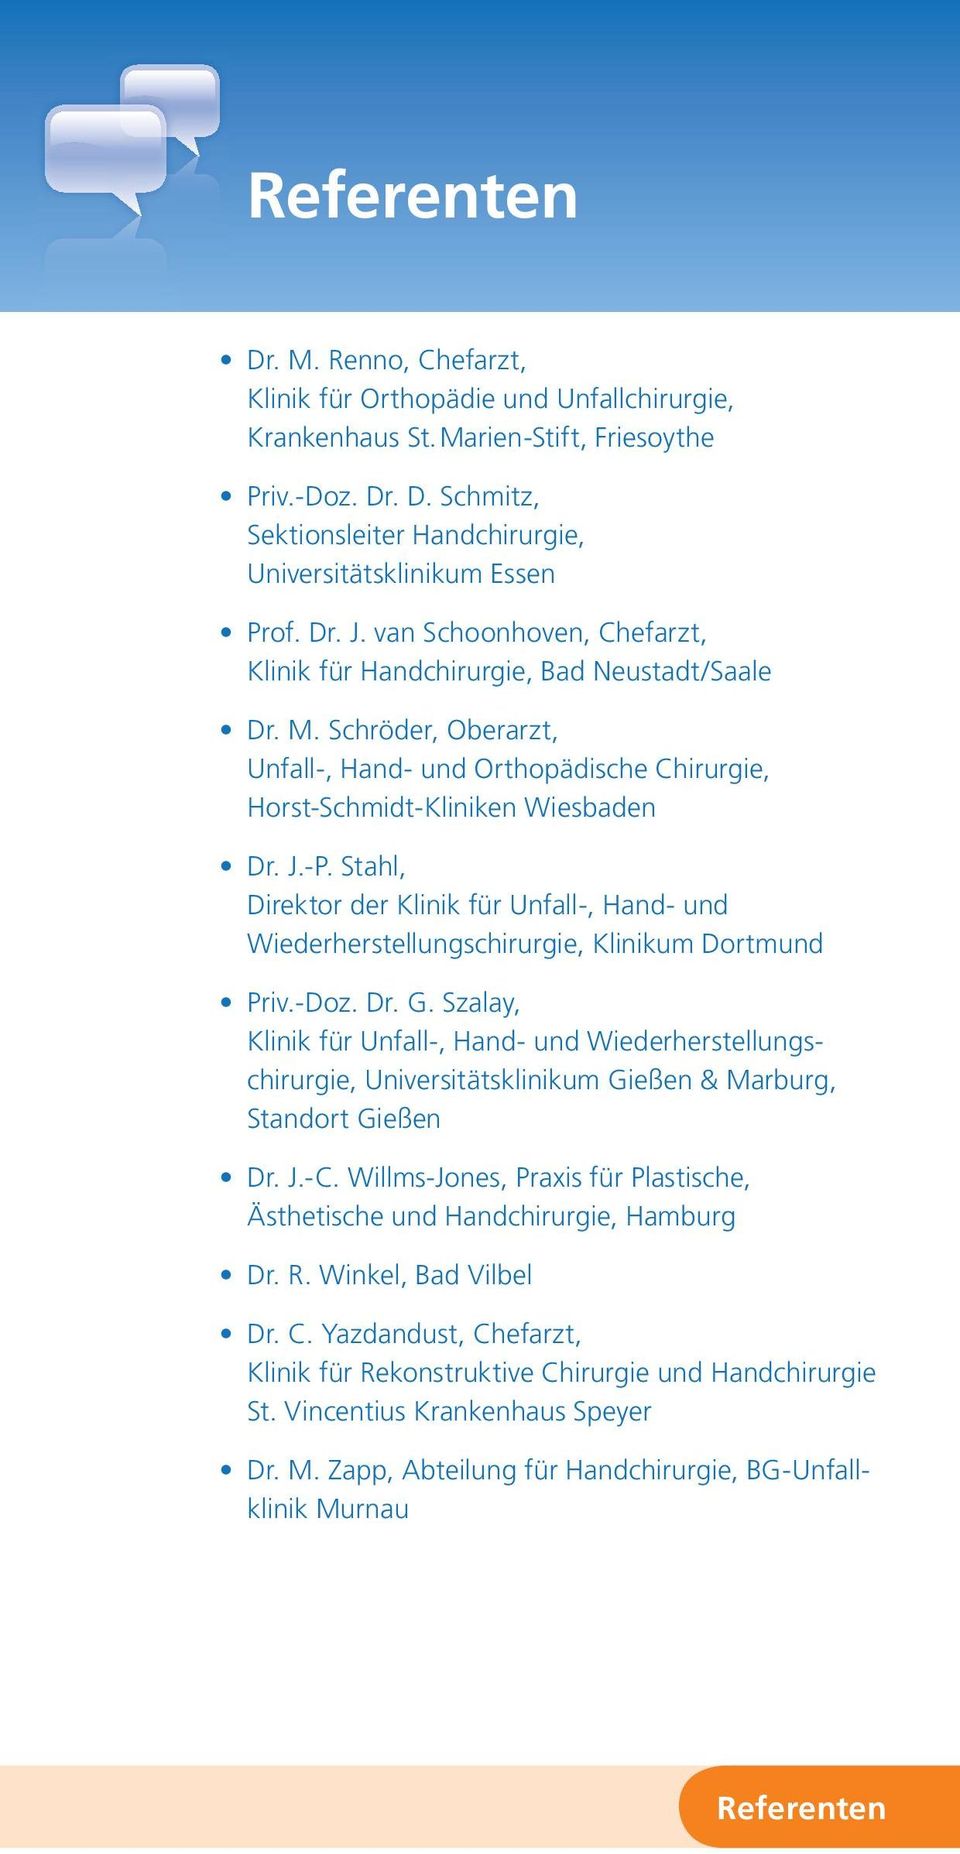 Stahl, Direktor der Klinik für Unfall-, Hand- und Wiederherstellungschirurgie, Klinikum Dortmund Priv.-Doz. Dr. G.